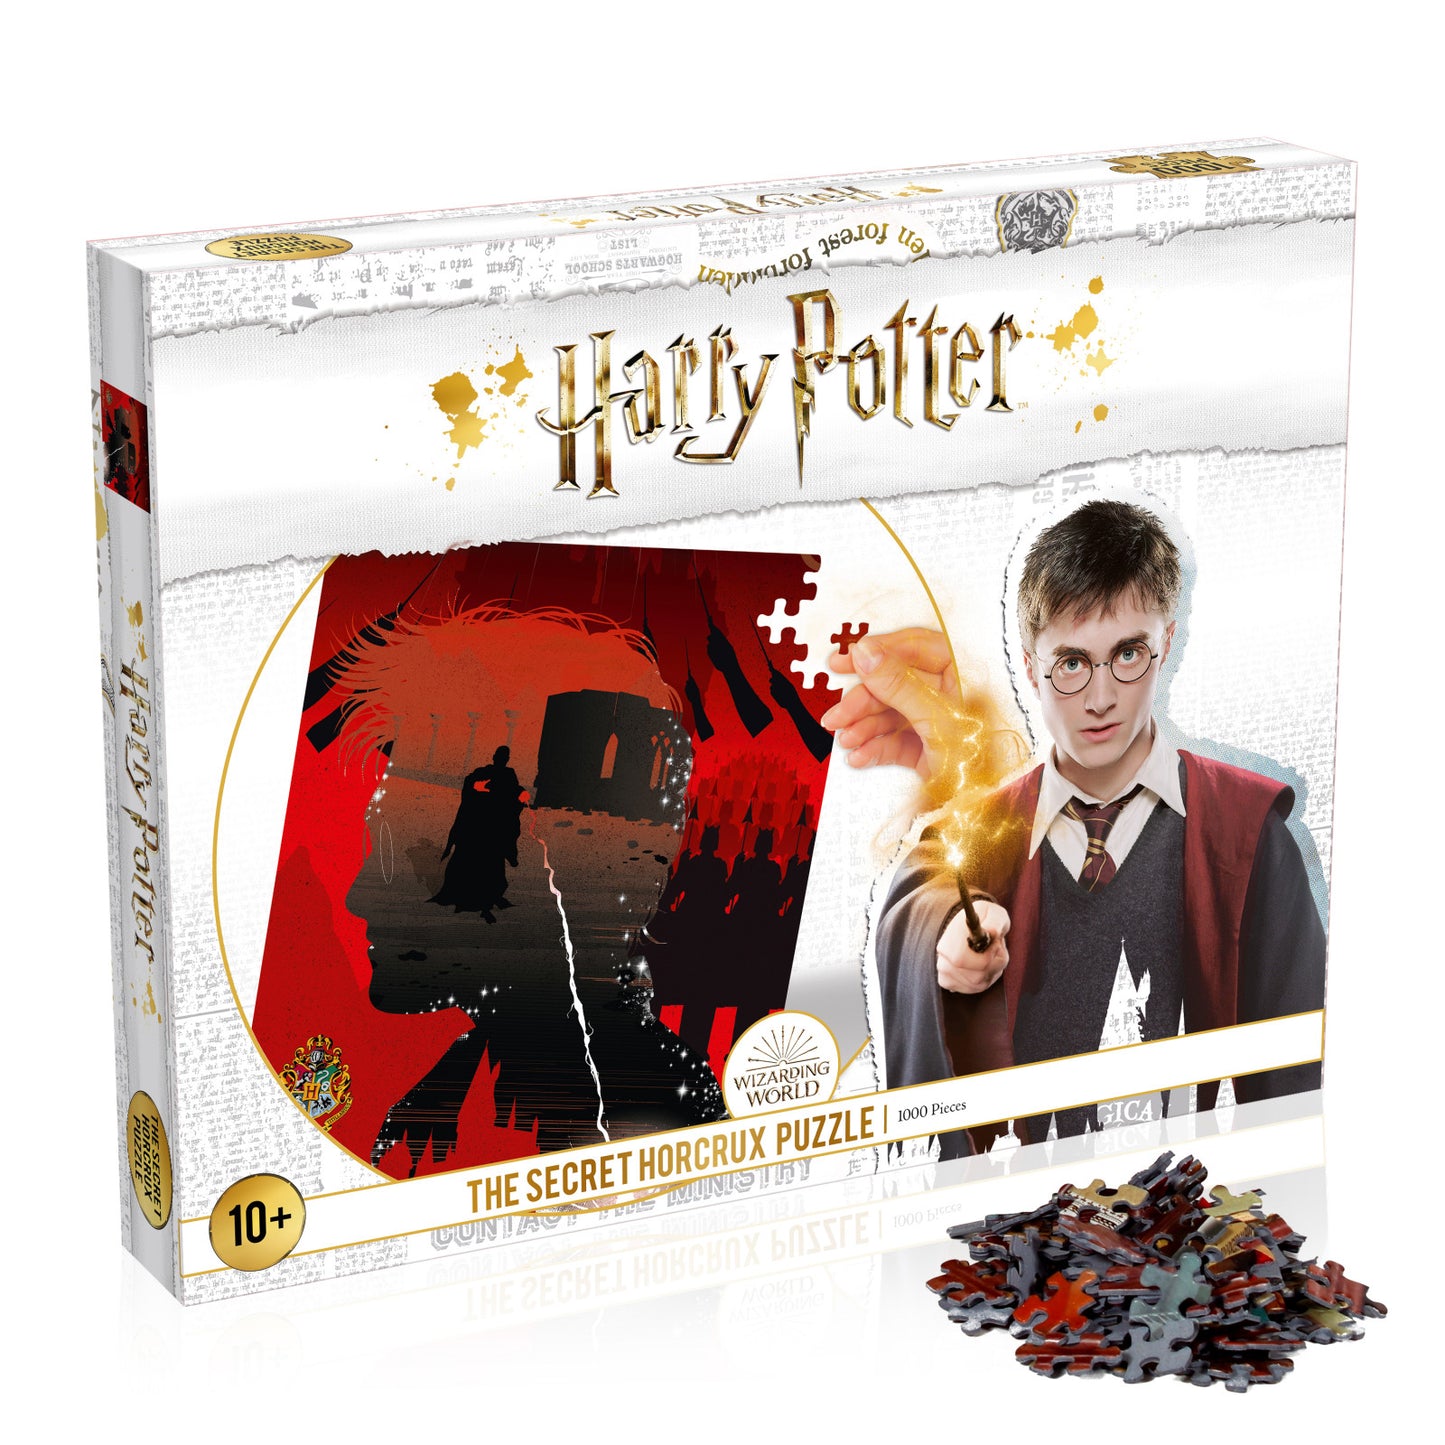 Harry Potter the Secret Horcrux Puzzle 1,000 pieces